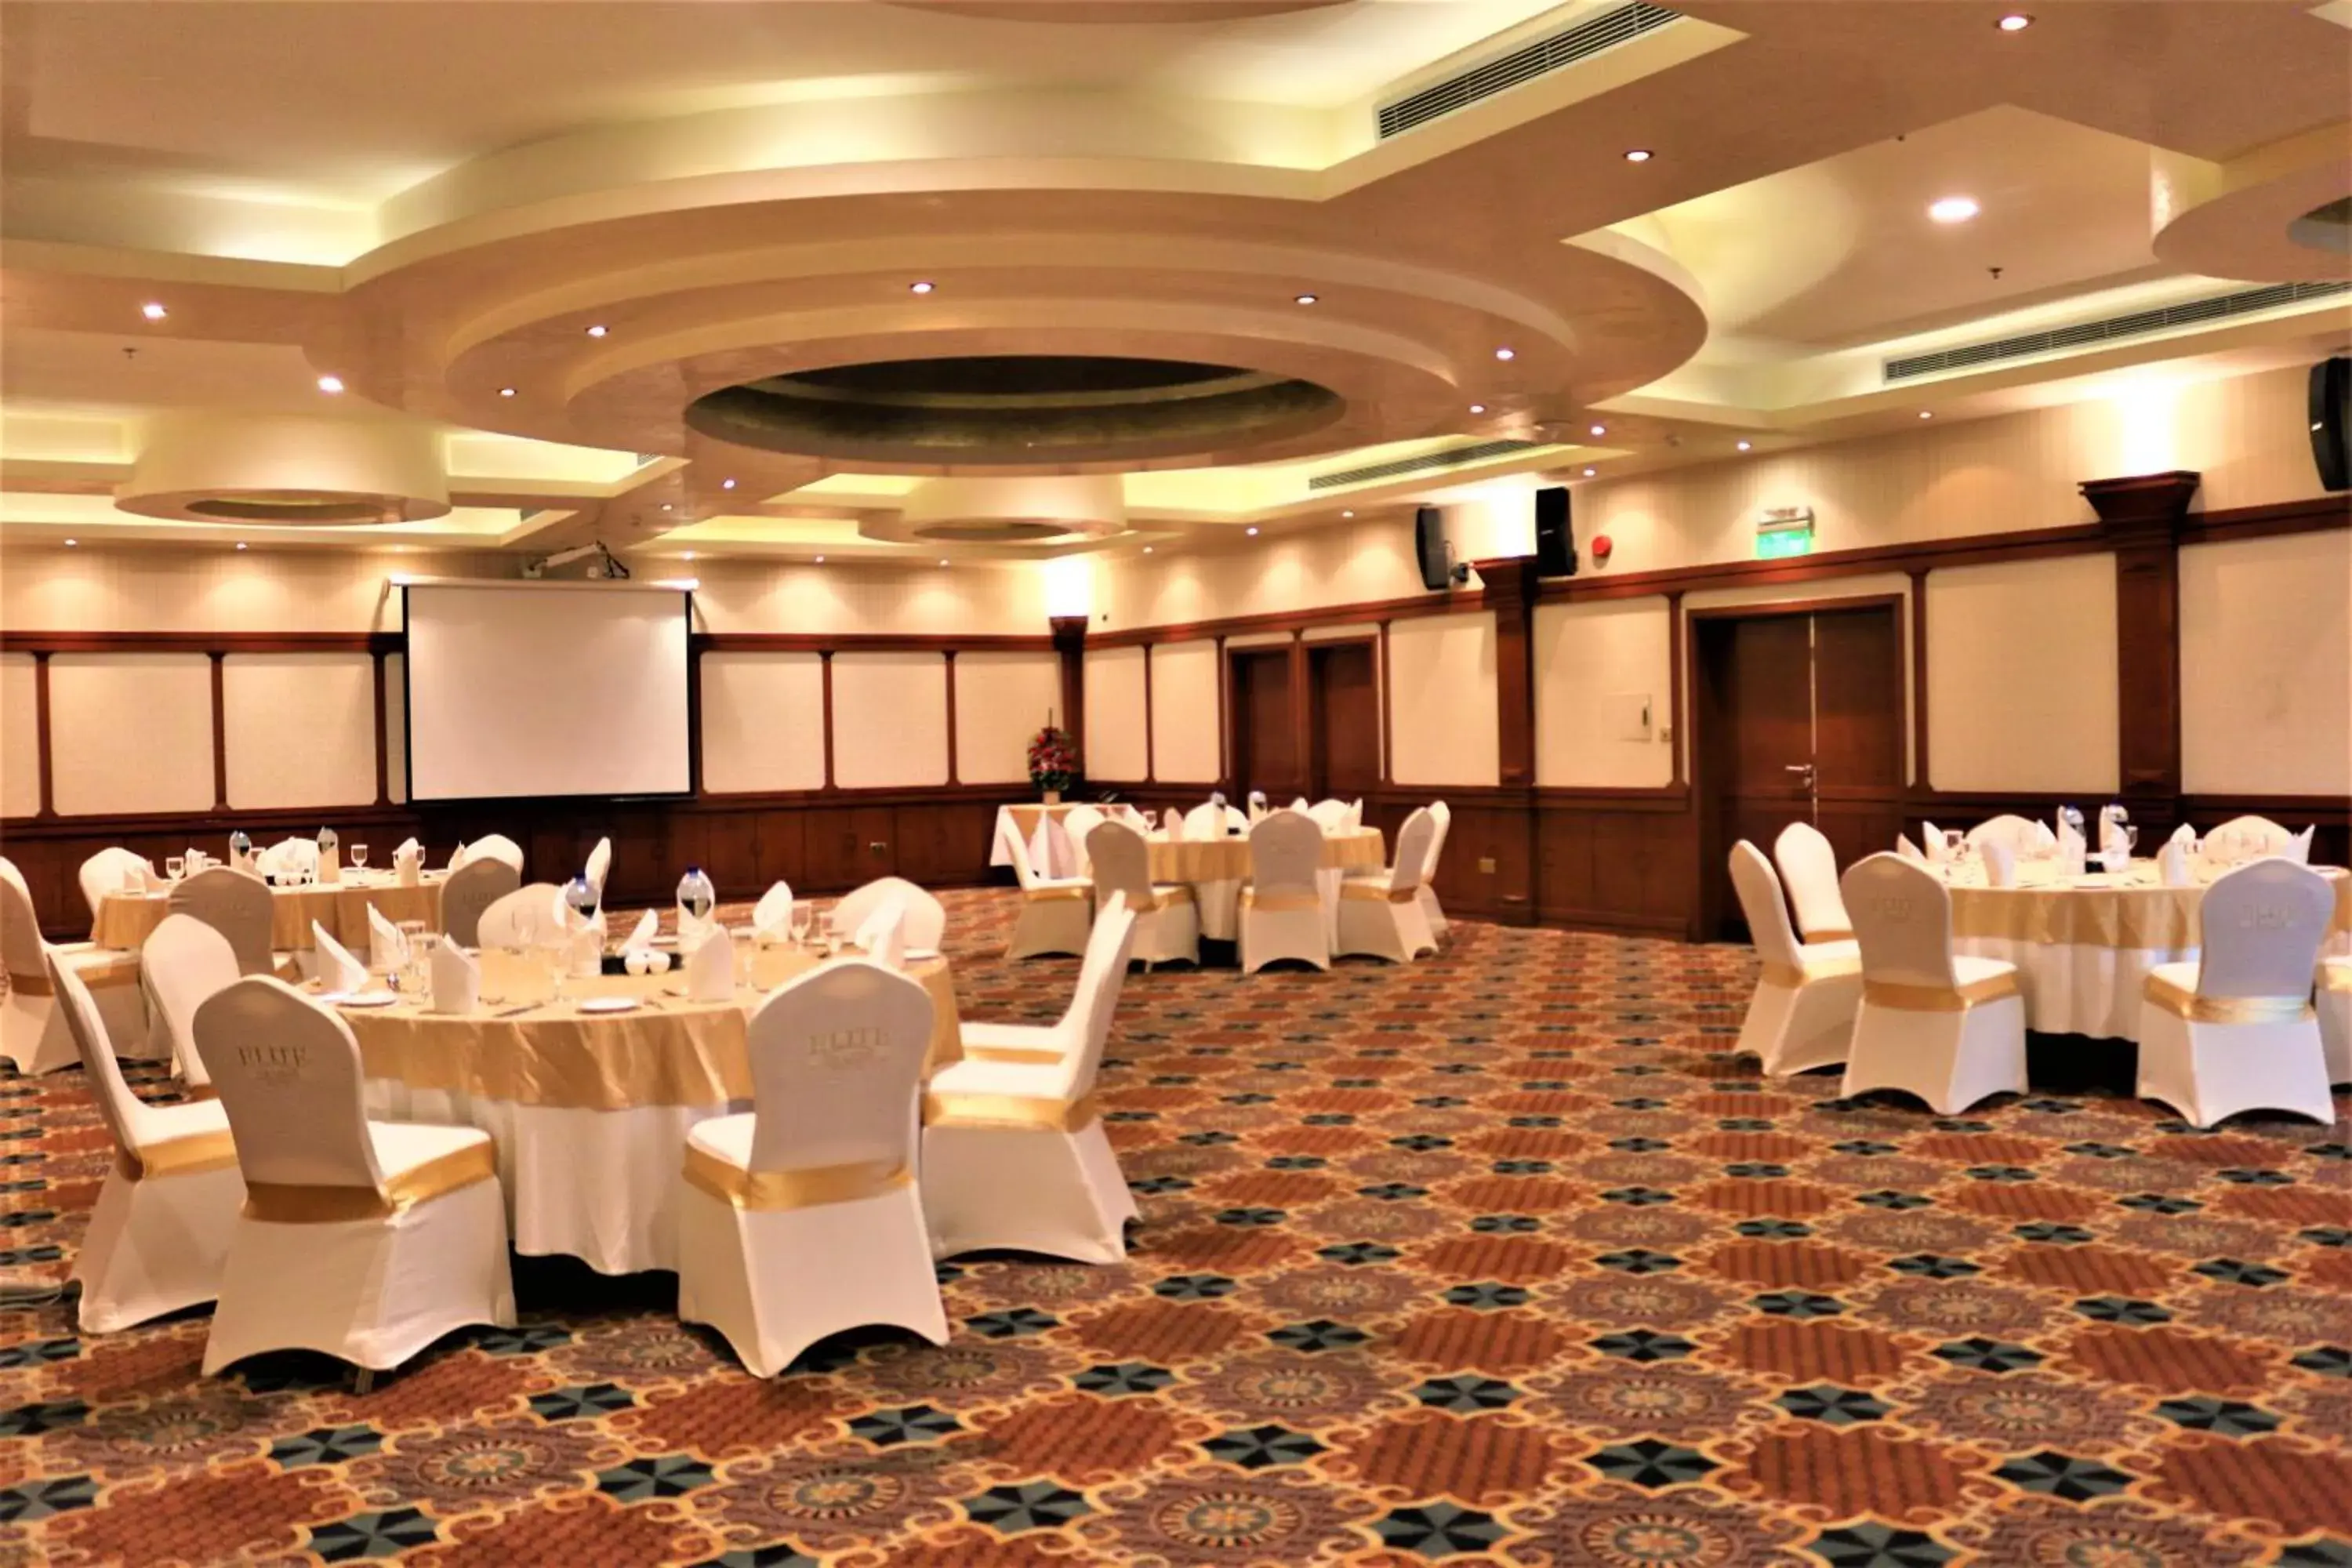 Banquet/Function facilities, Banquet Facilities in Elite Grande Hotel